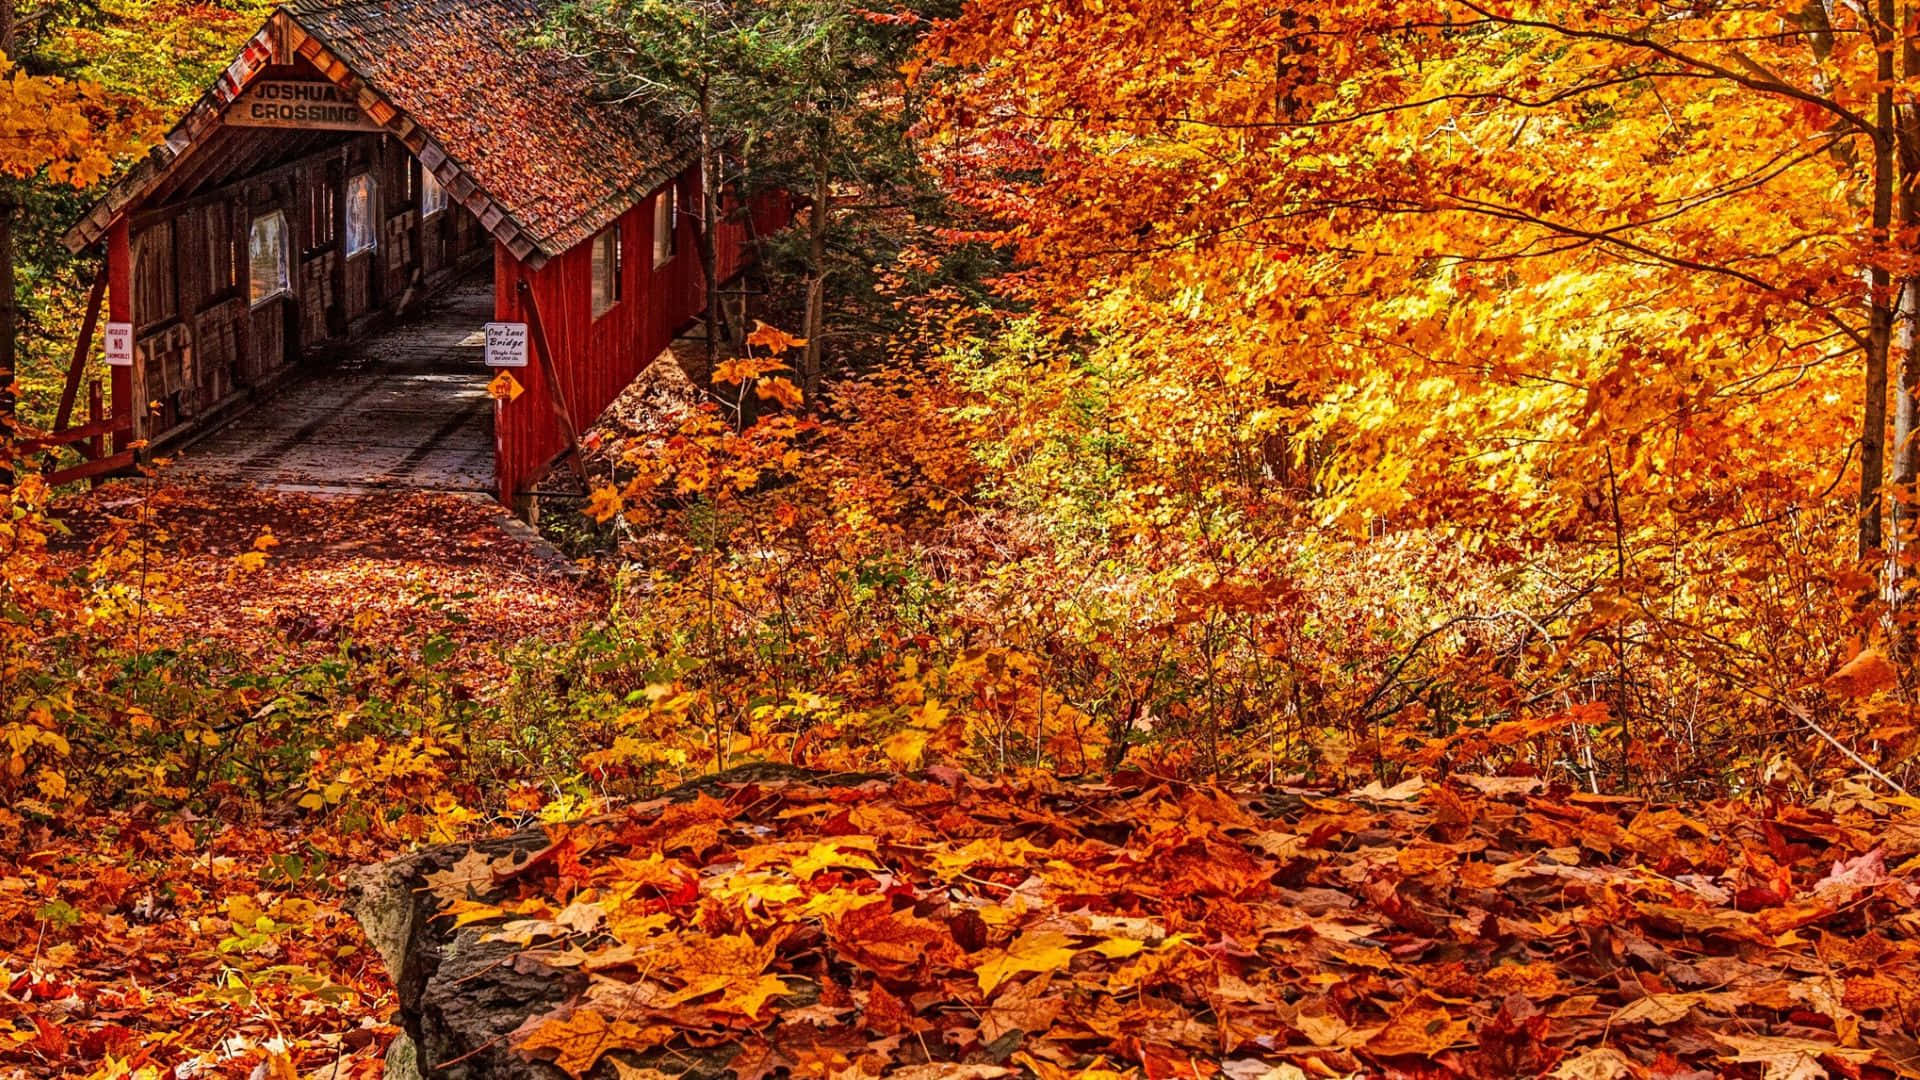 Stunning Fall Foliage Scenery - Vibrant Trees and Beautiful Lake Reflection Wallpaper